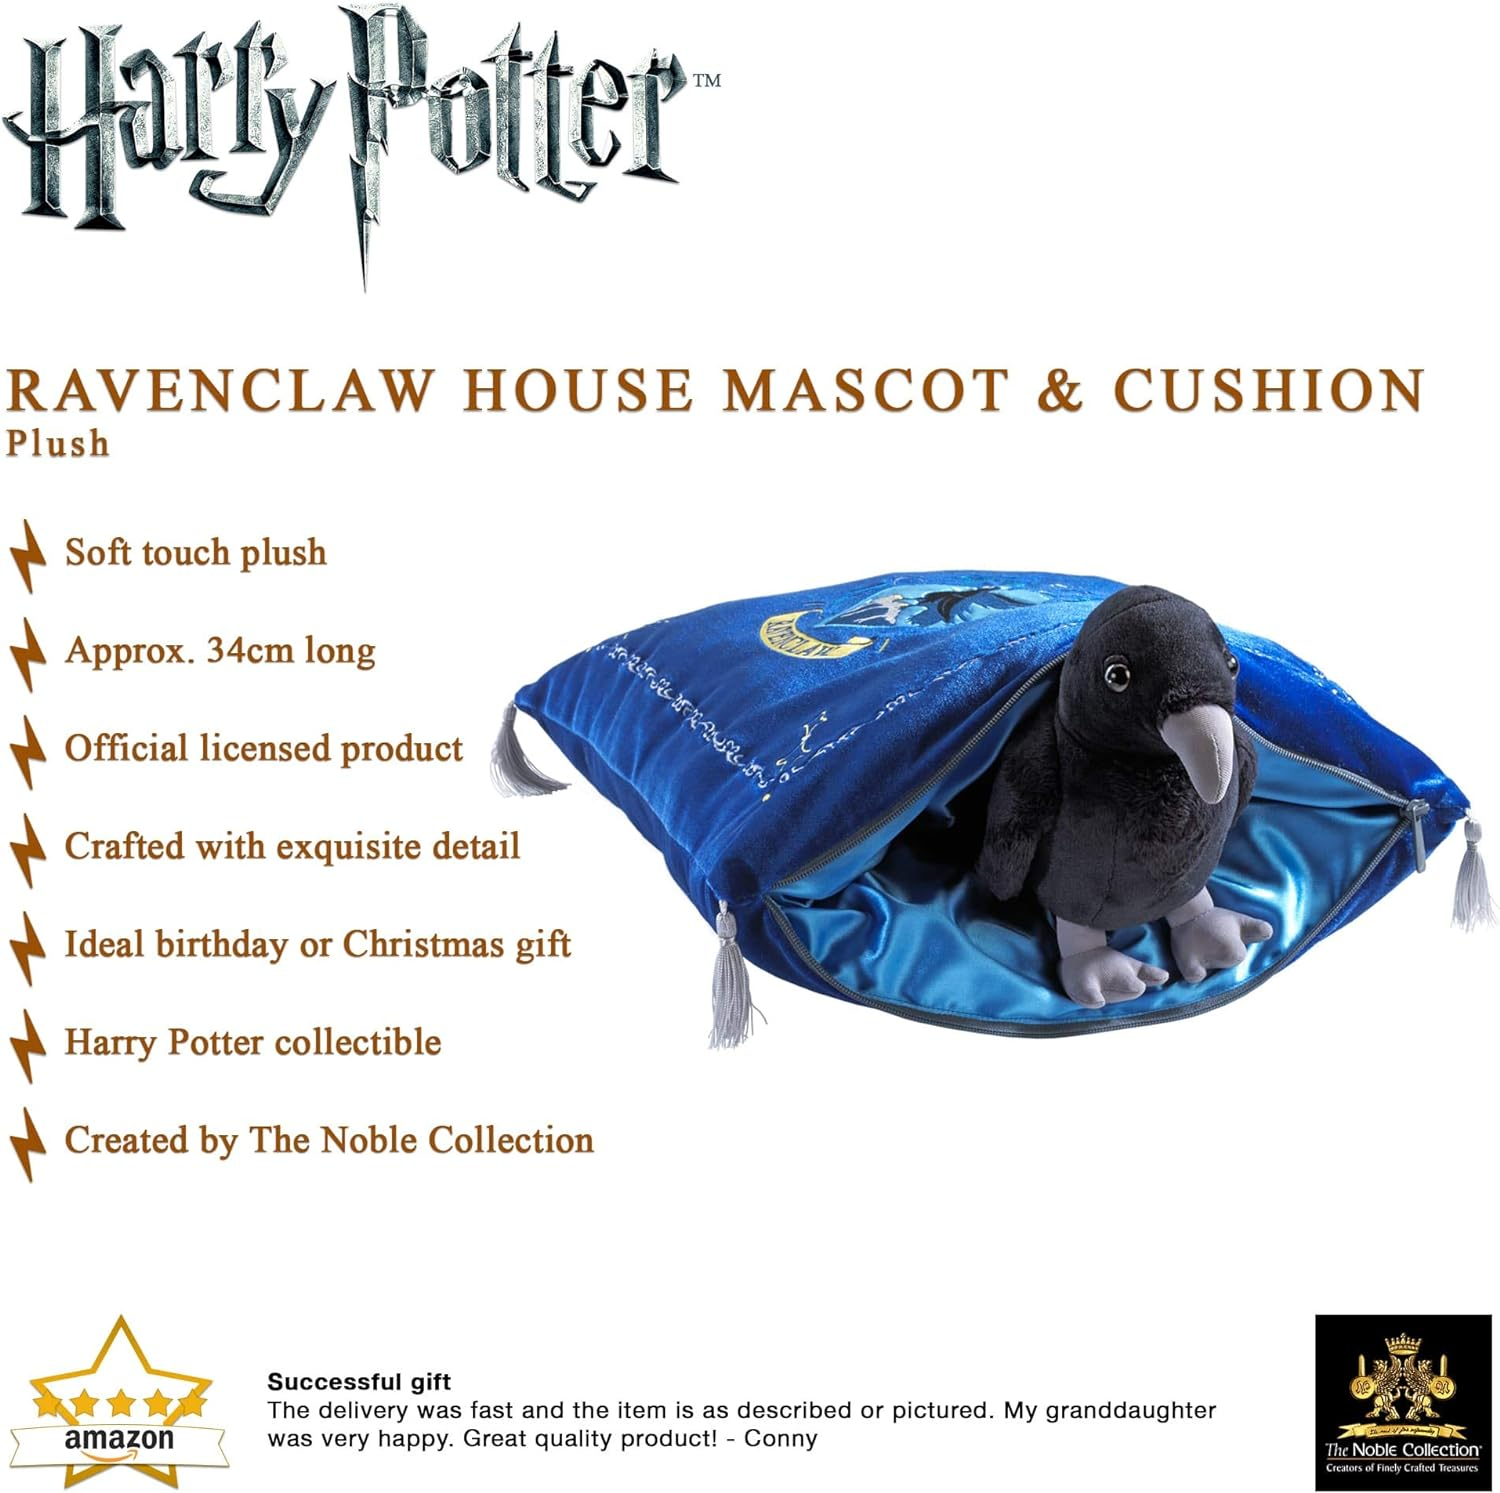 Plüschfigur mit Potter COLLECTION NOBLE bunt Plüschfigur Ravenclaw Harry Mascot House Kissen